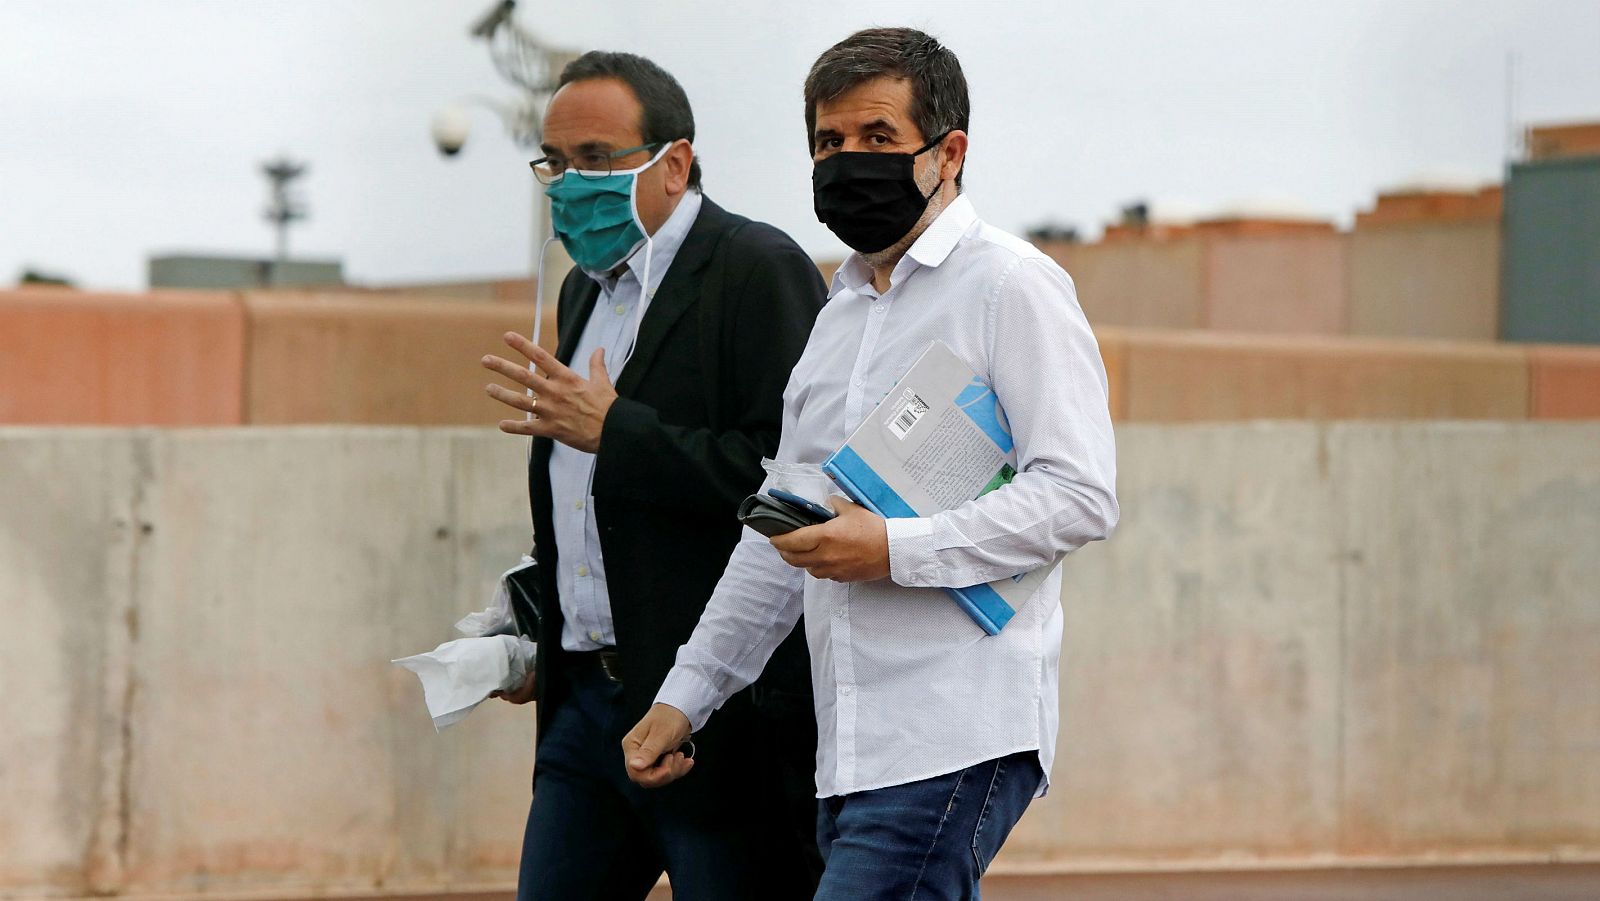 El exconseller Josep Rull acompañado por el expresidente de la ANC, Jordi Sánchez a su salida de la prisión de Lledoners (Barcelona), para llevar a cabo labores de voluntariado en aplicación del artículo 100.2 de régimen penitenciario.